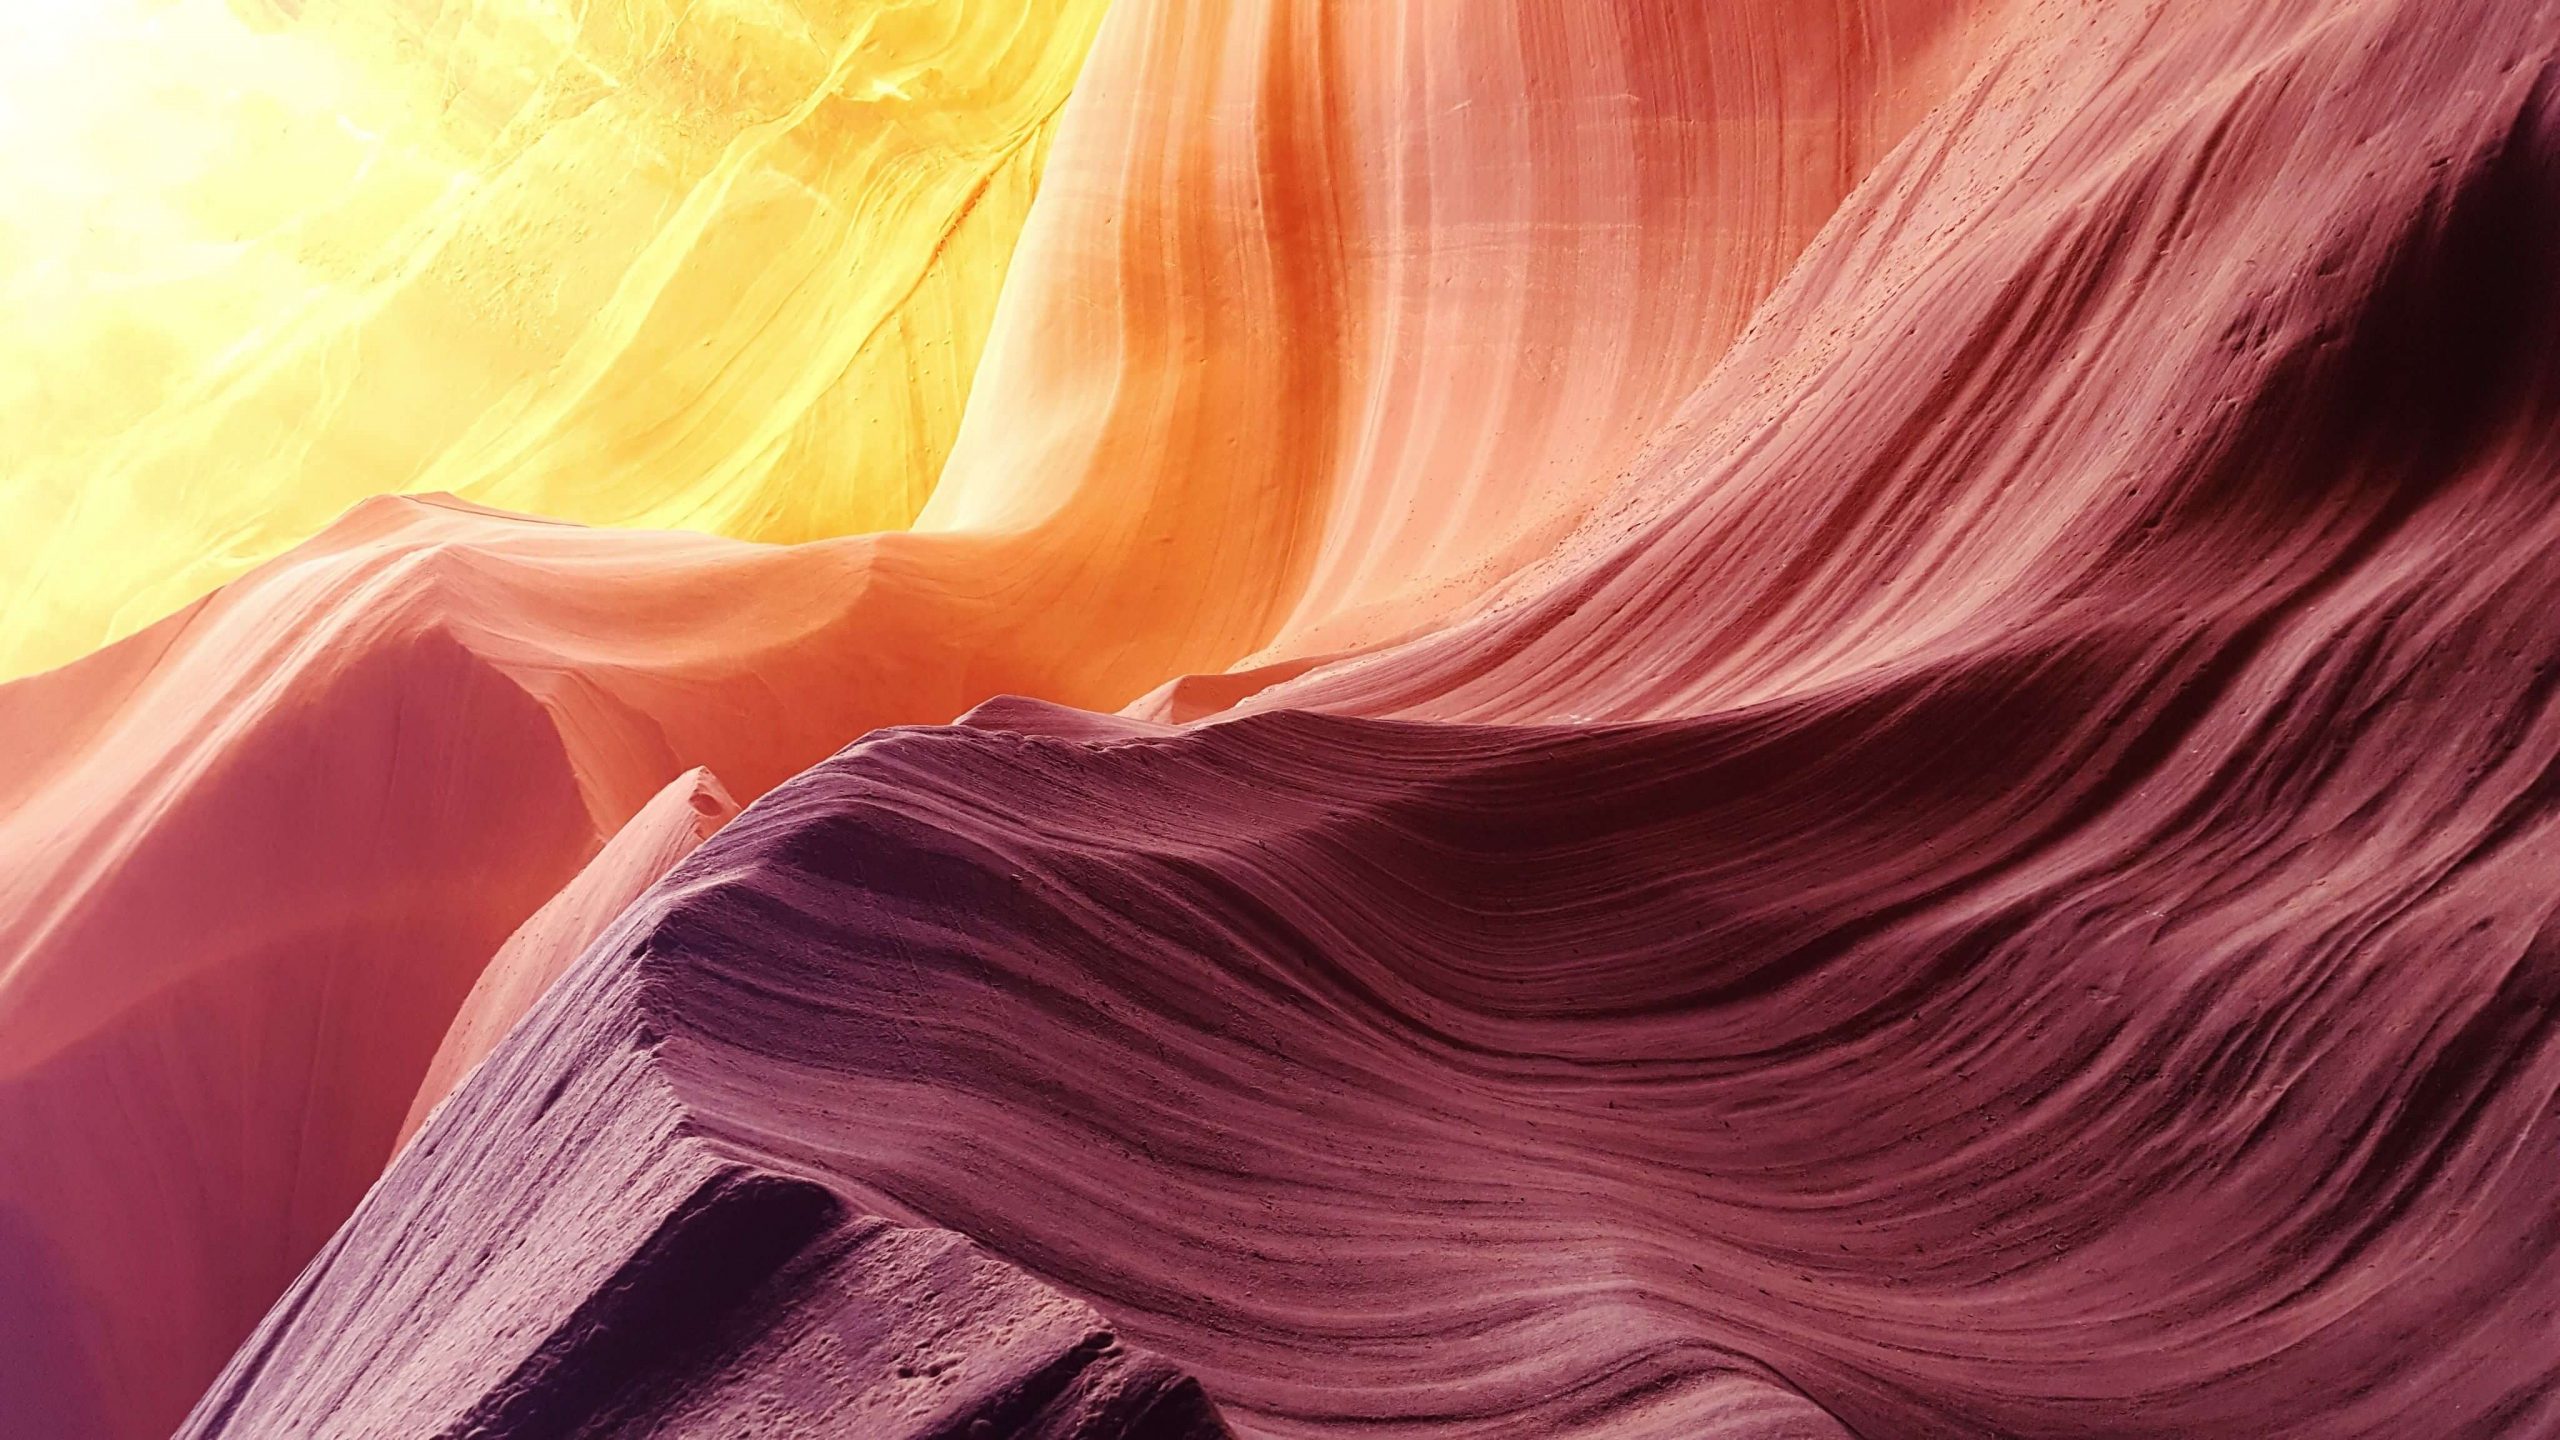  Dunes colorées.